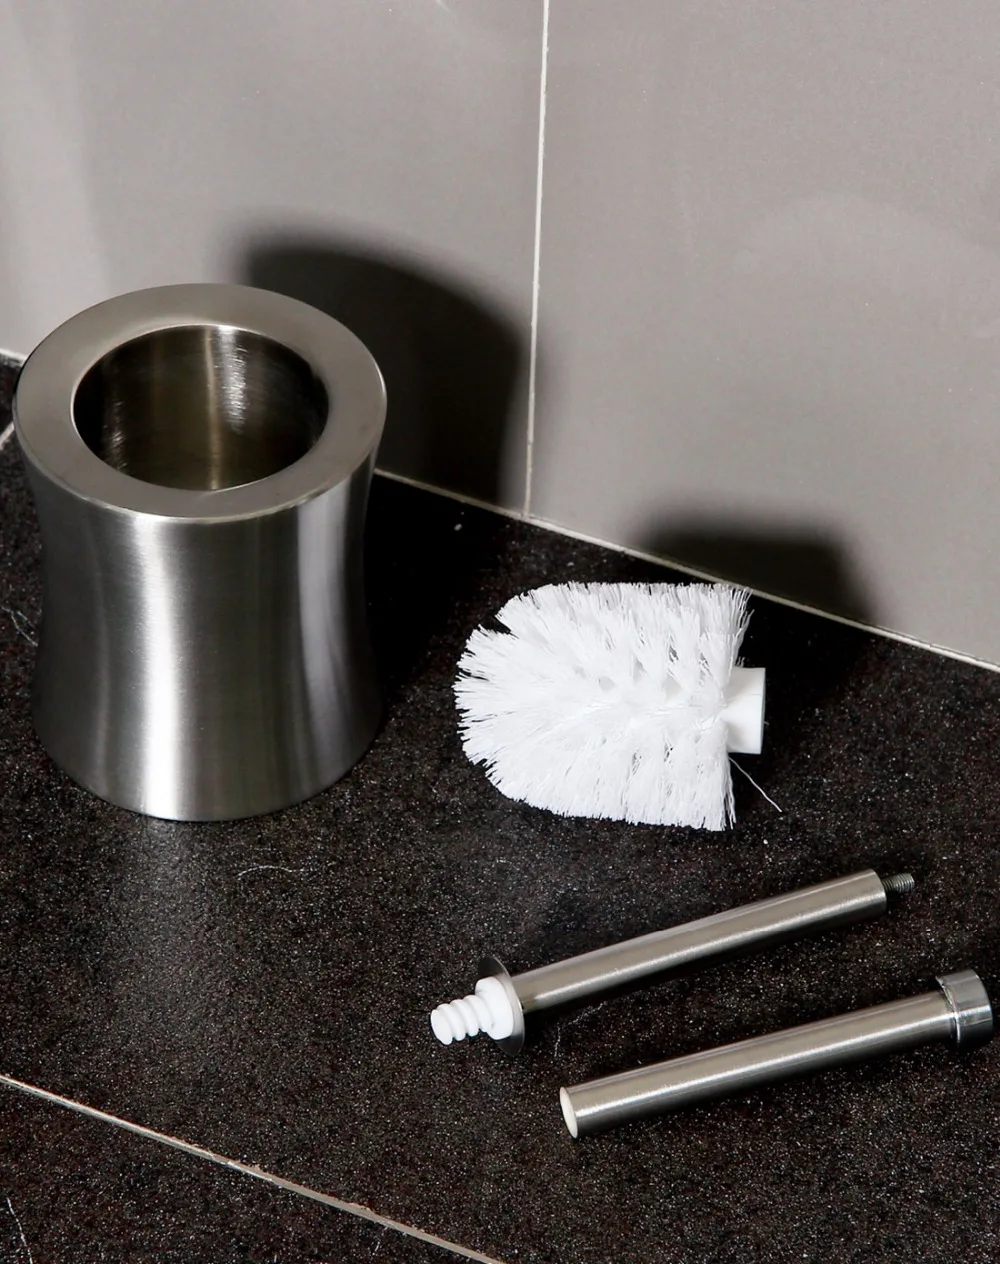 ORZ набор кистей для унитаза из двойной толщины нержавеющей стали, держатель для туалетной щетки, аксессуары для ванной комнаты, набор кистей для унитаза